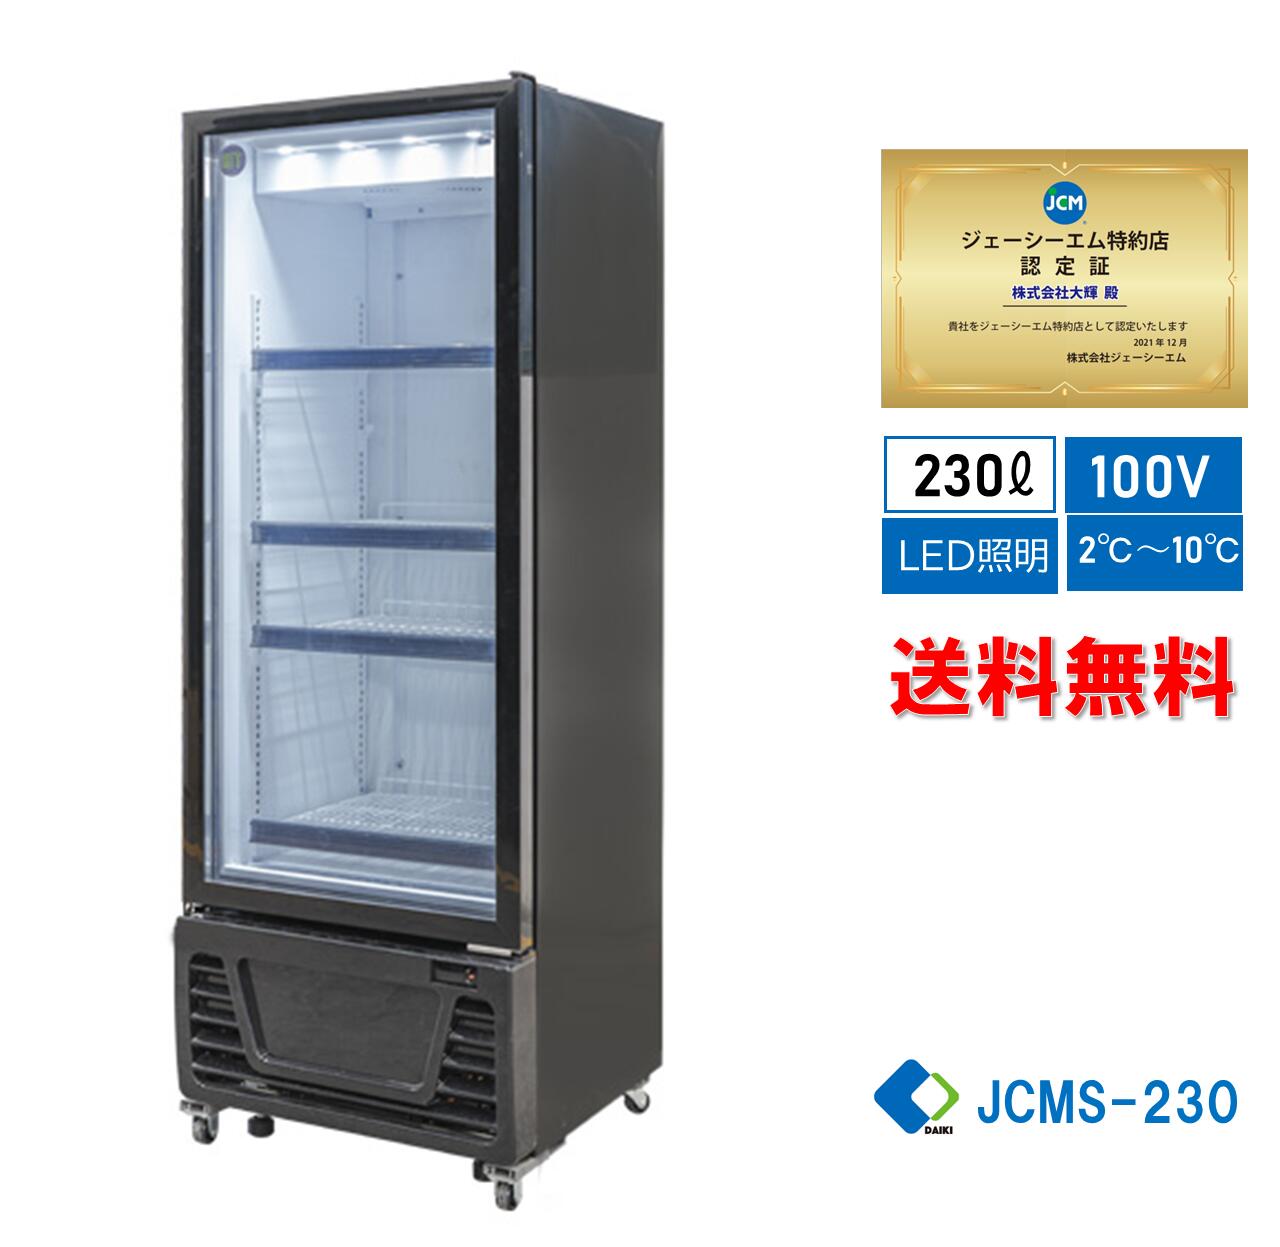 ☆助成金対象商品☆業務用 JCM RIT タテ型 冷蔵ショーケース 冷蔵庫 